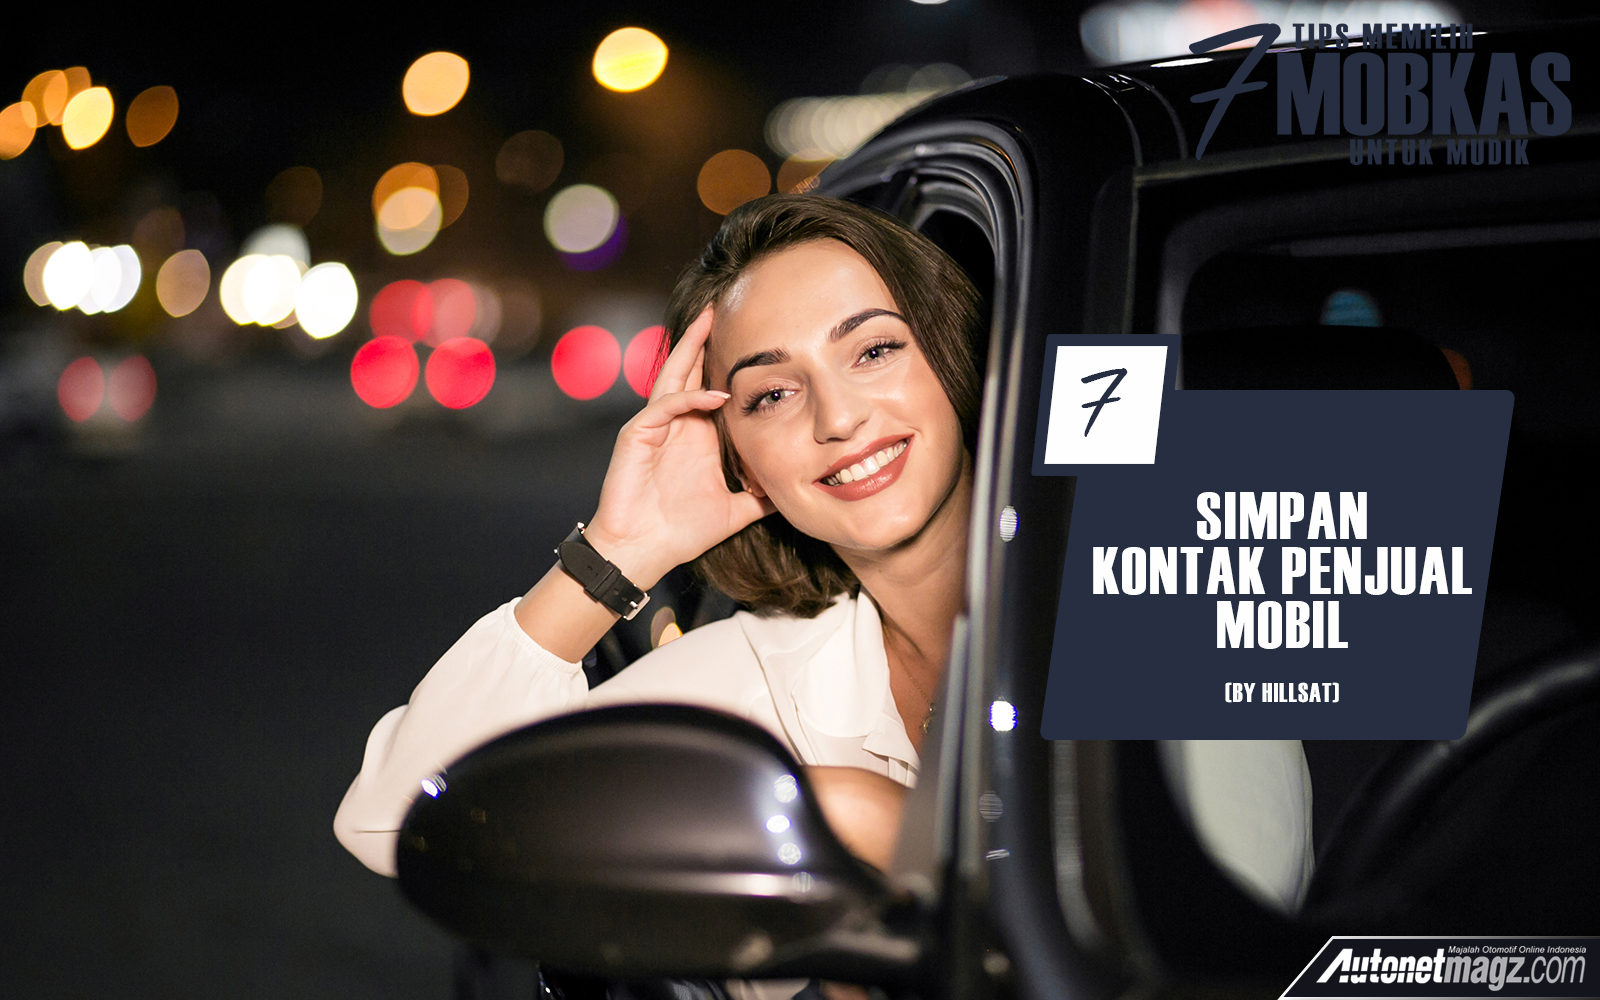 Serba 7, 7 tips mobkas – 7: Tips Memilih Mobil Bekas Untuk Mudik Ala AutonetMagz